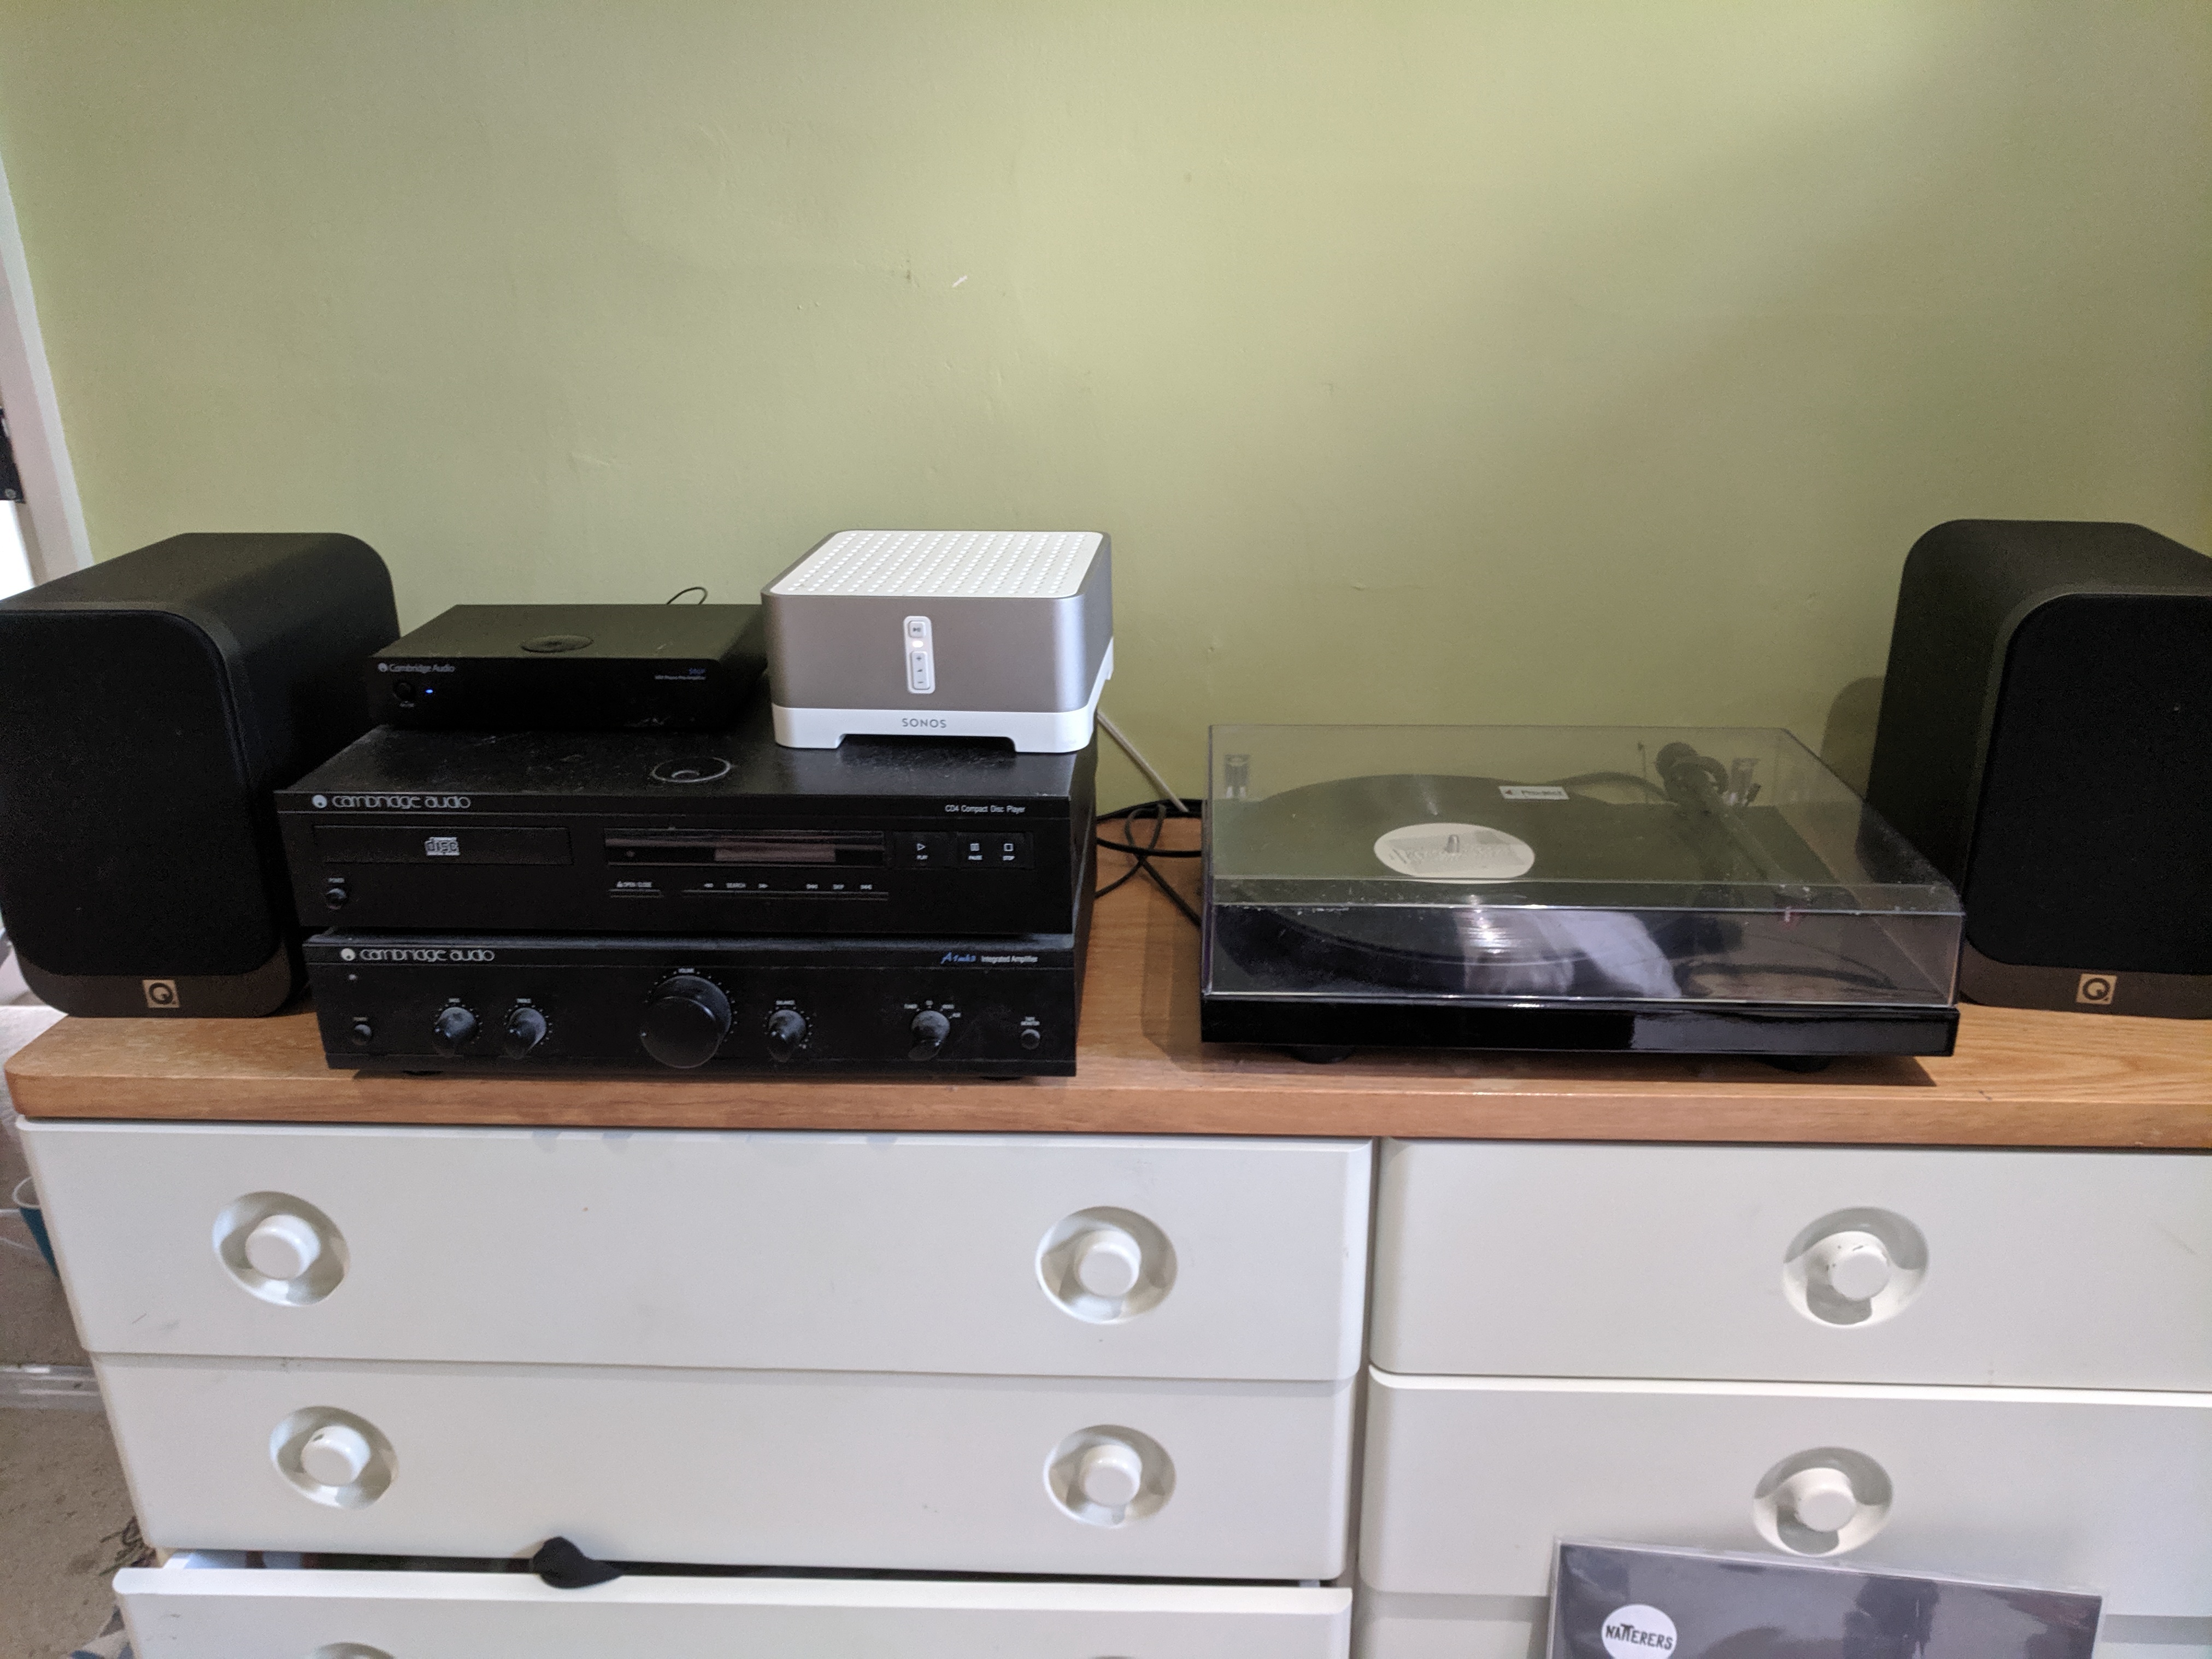 Vinyl using my Sonos Connect | Sonos Community